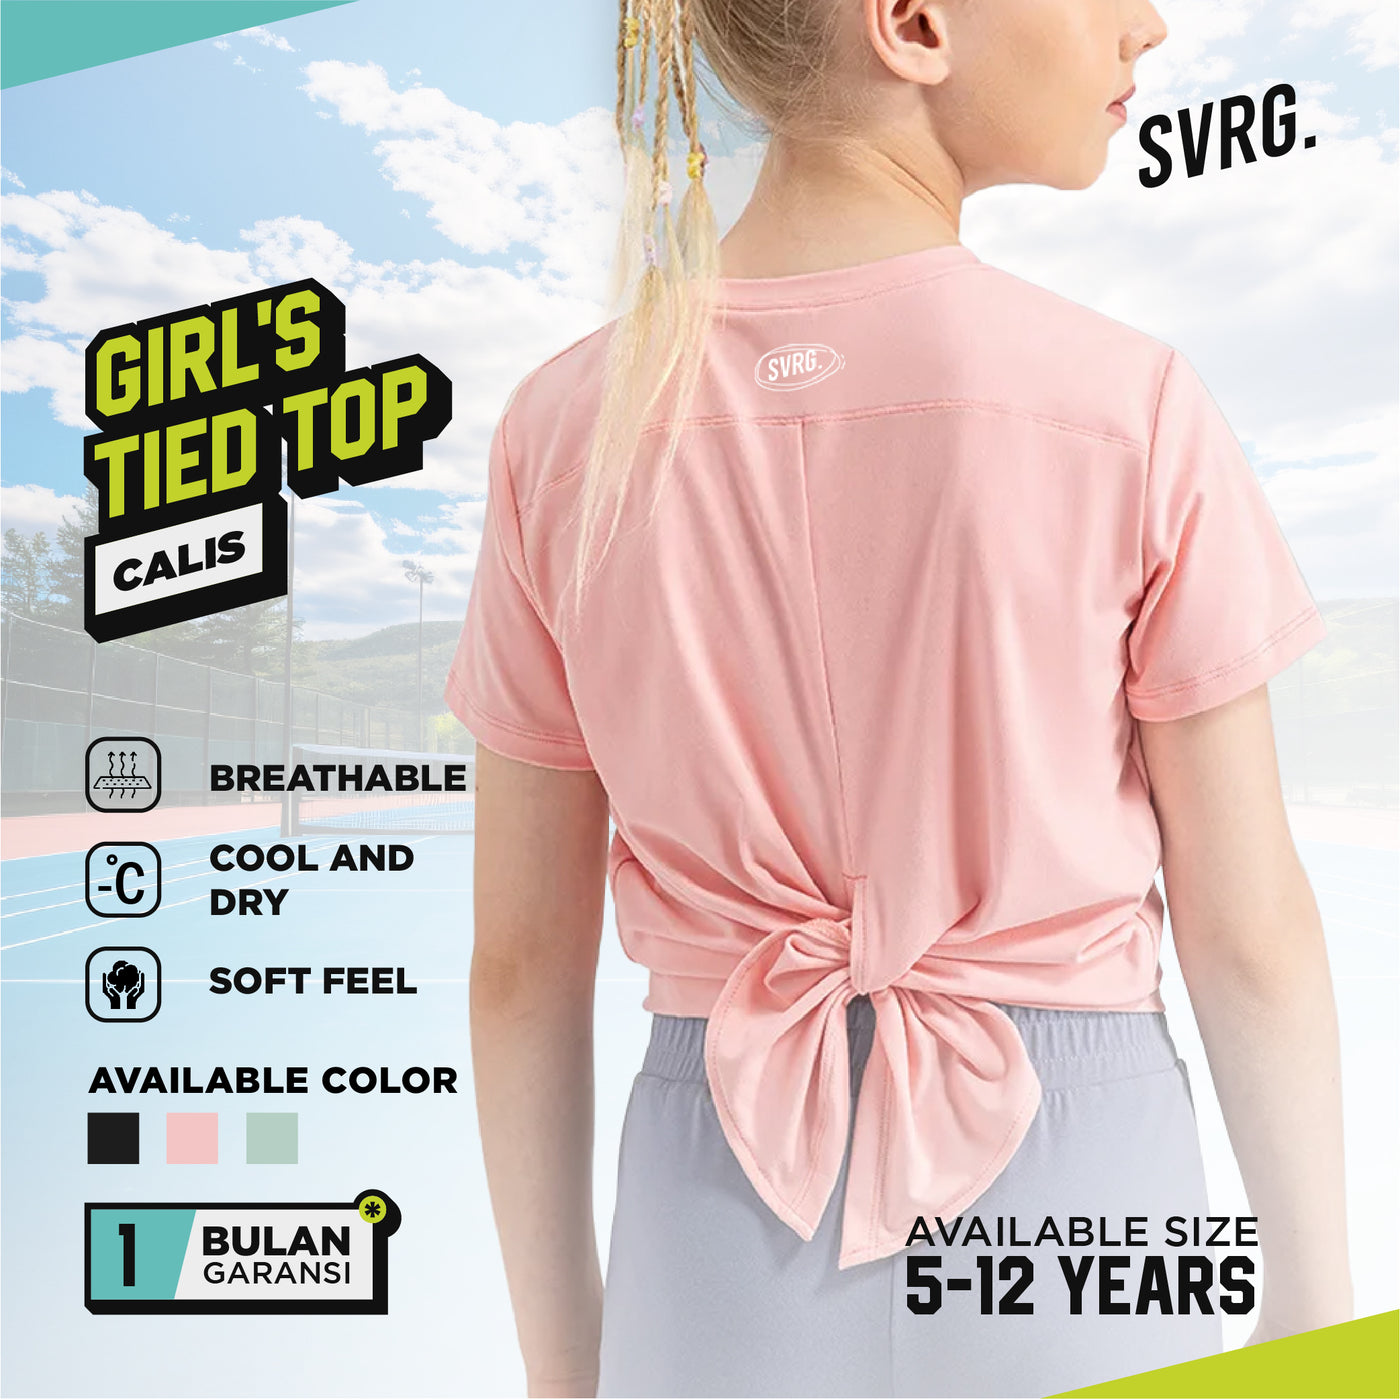 Calis Top for Girls - Baju Atasan Kaos Olahraga Anak Perempuan